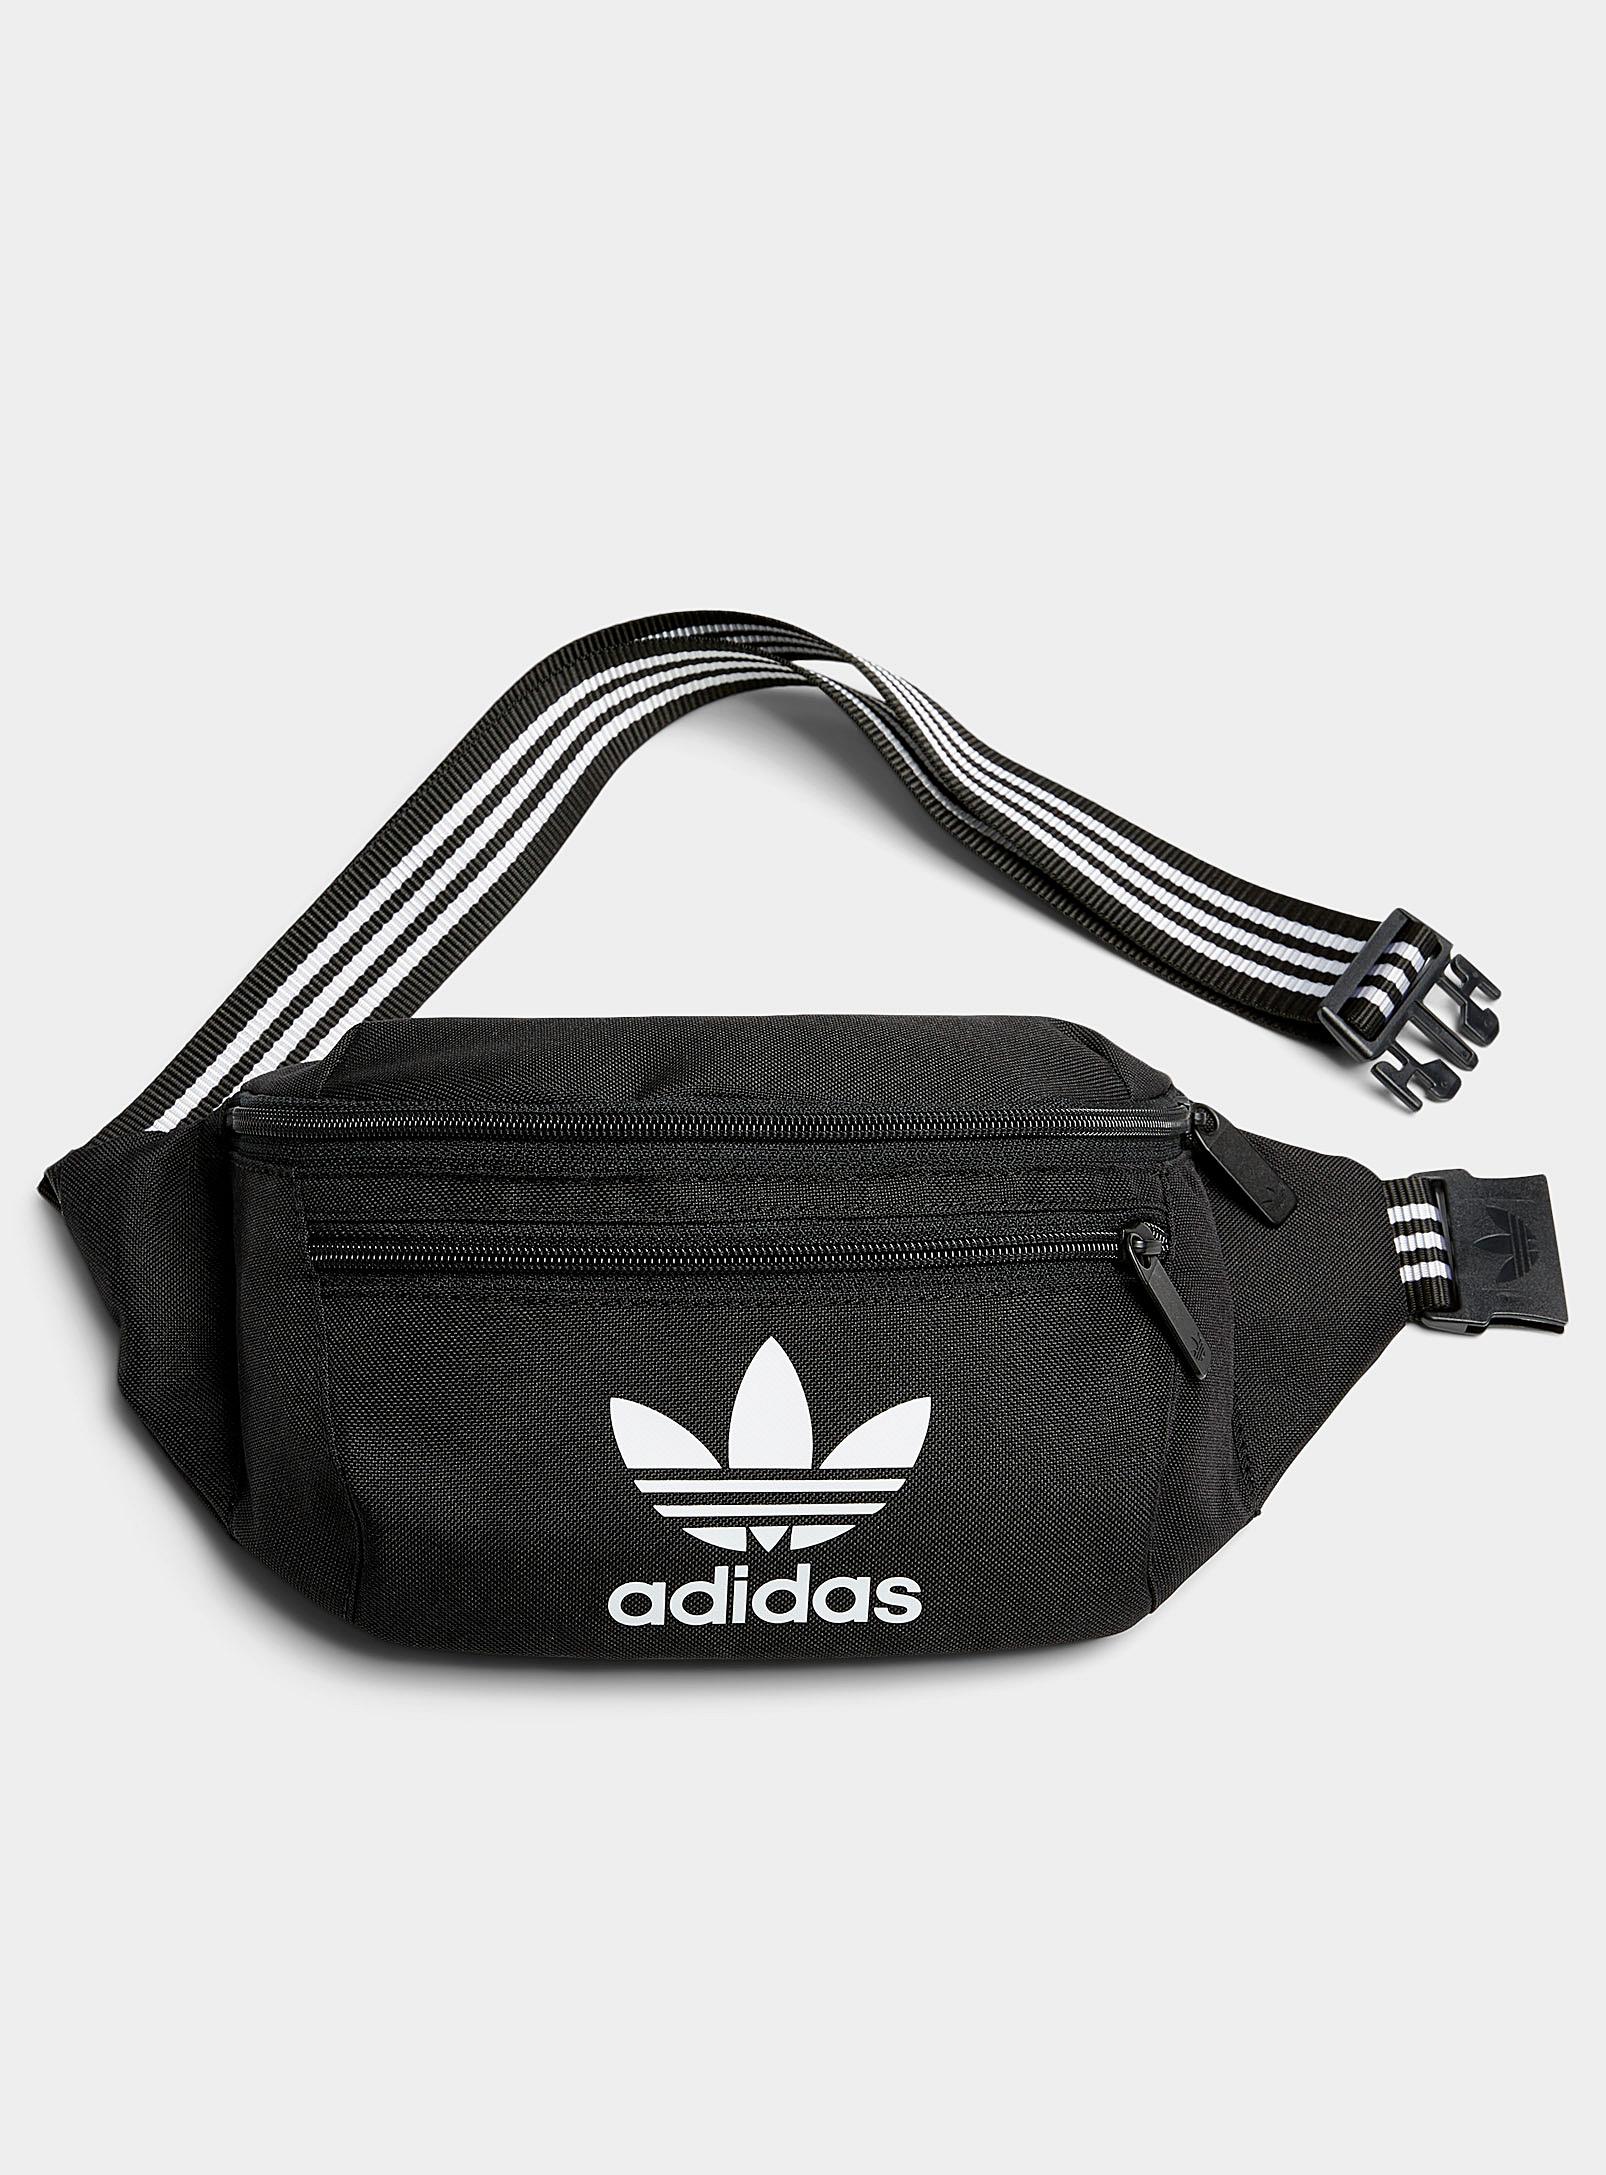 adidas Originals Adicolor Logo Belt Bag in Black | Lyst